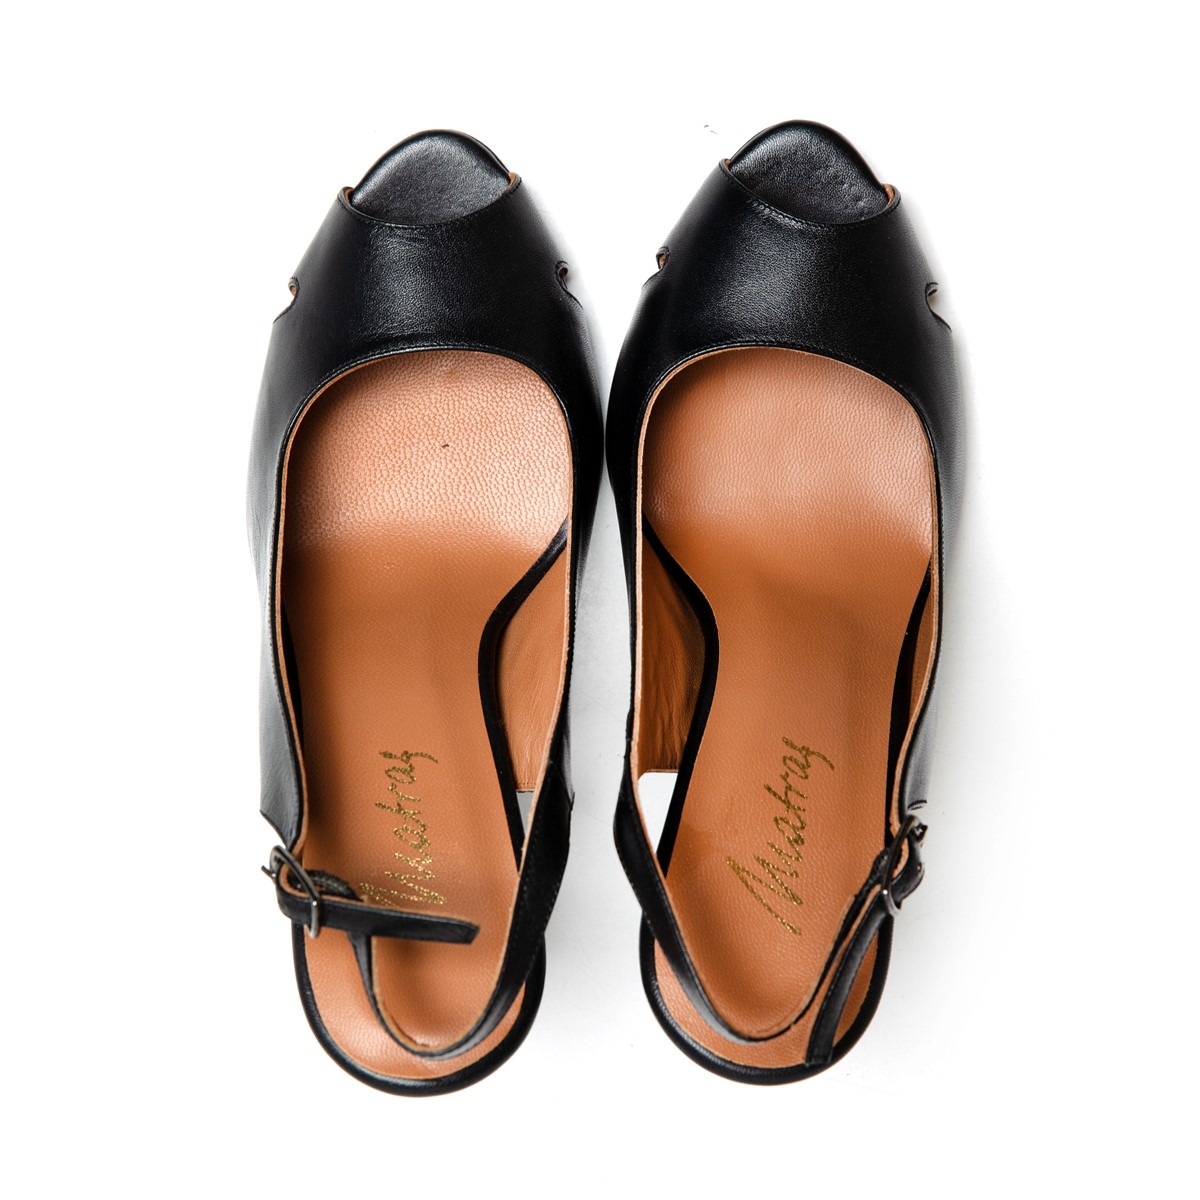 Matraş Kadın Deri Topuklu Ayakkabı  Siyah 9FF-1039